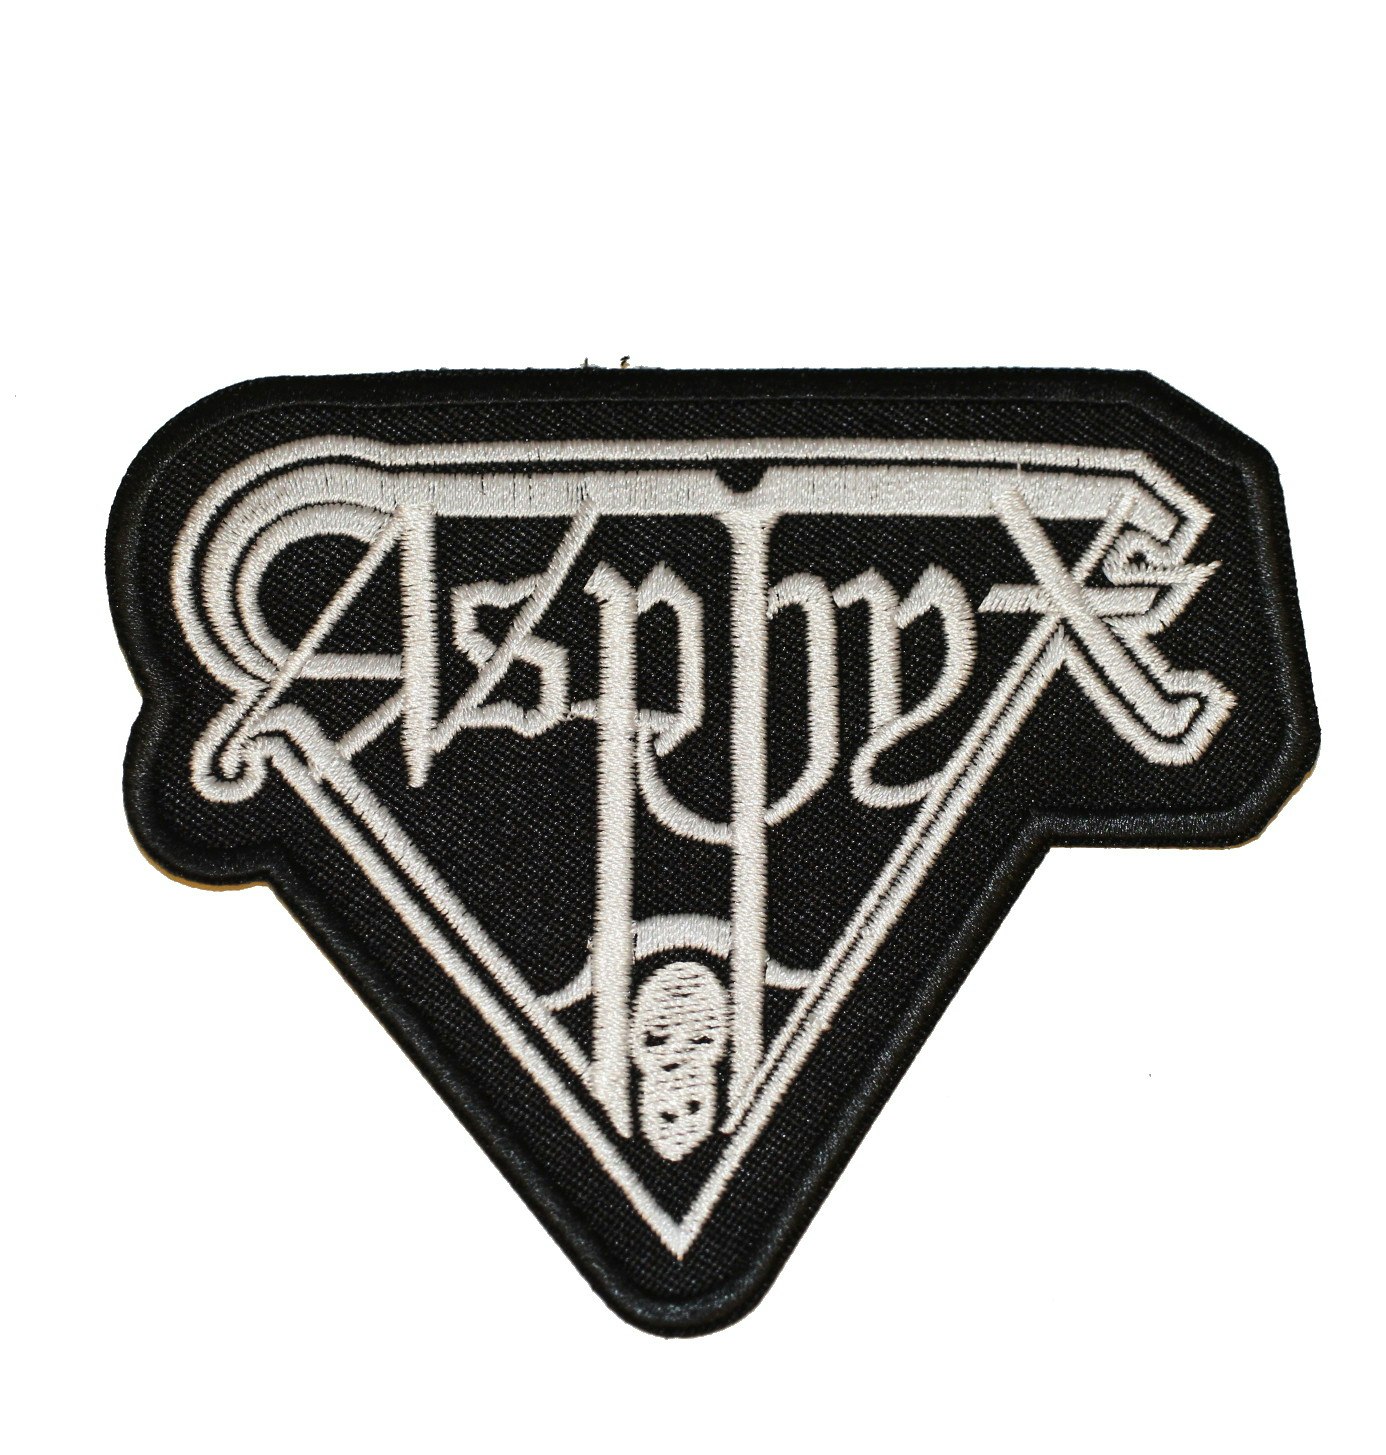 Asphyx logo patch